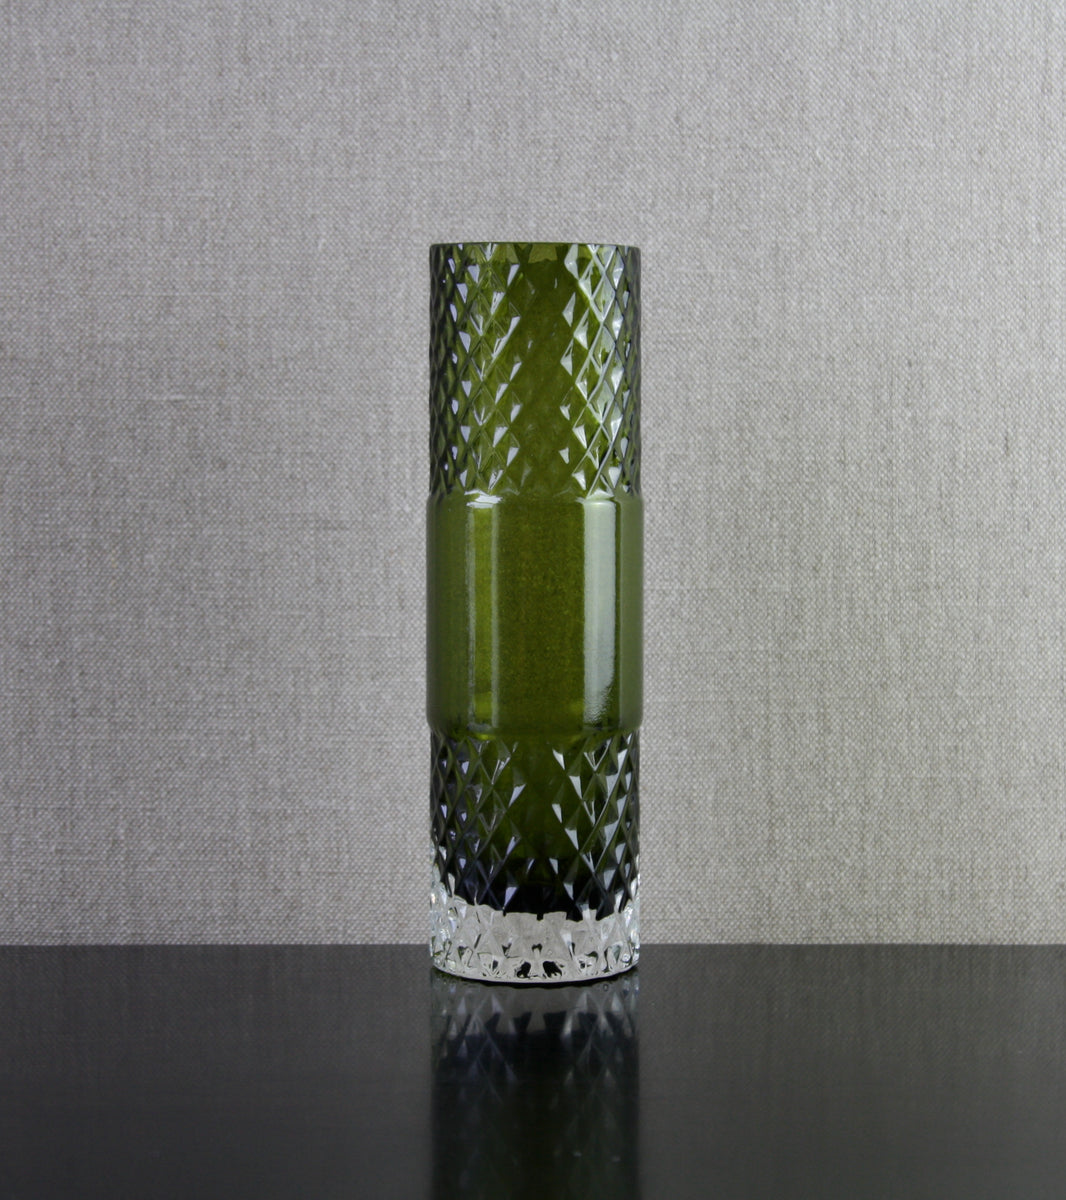 Model 1492 Vase in Olive Green by Tamara Aladin, 1966